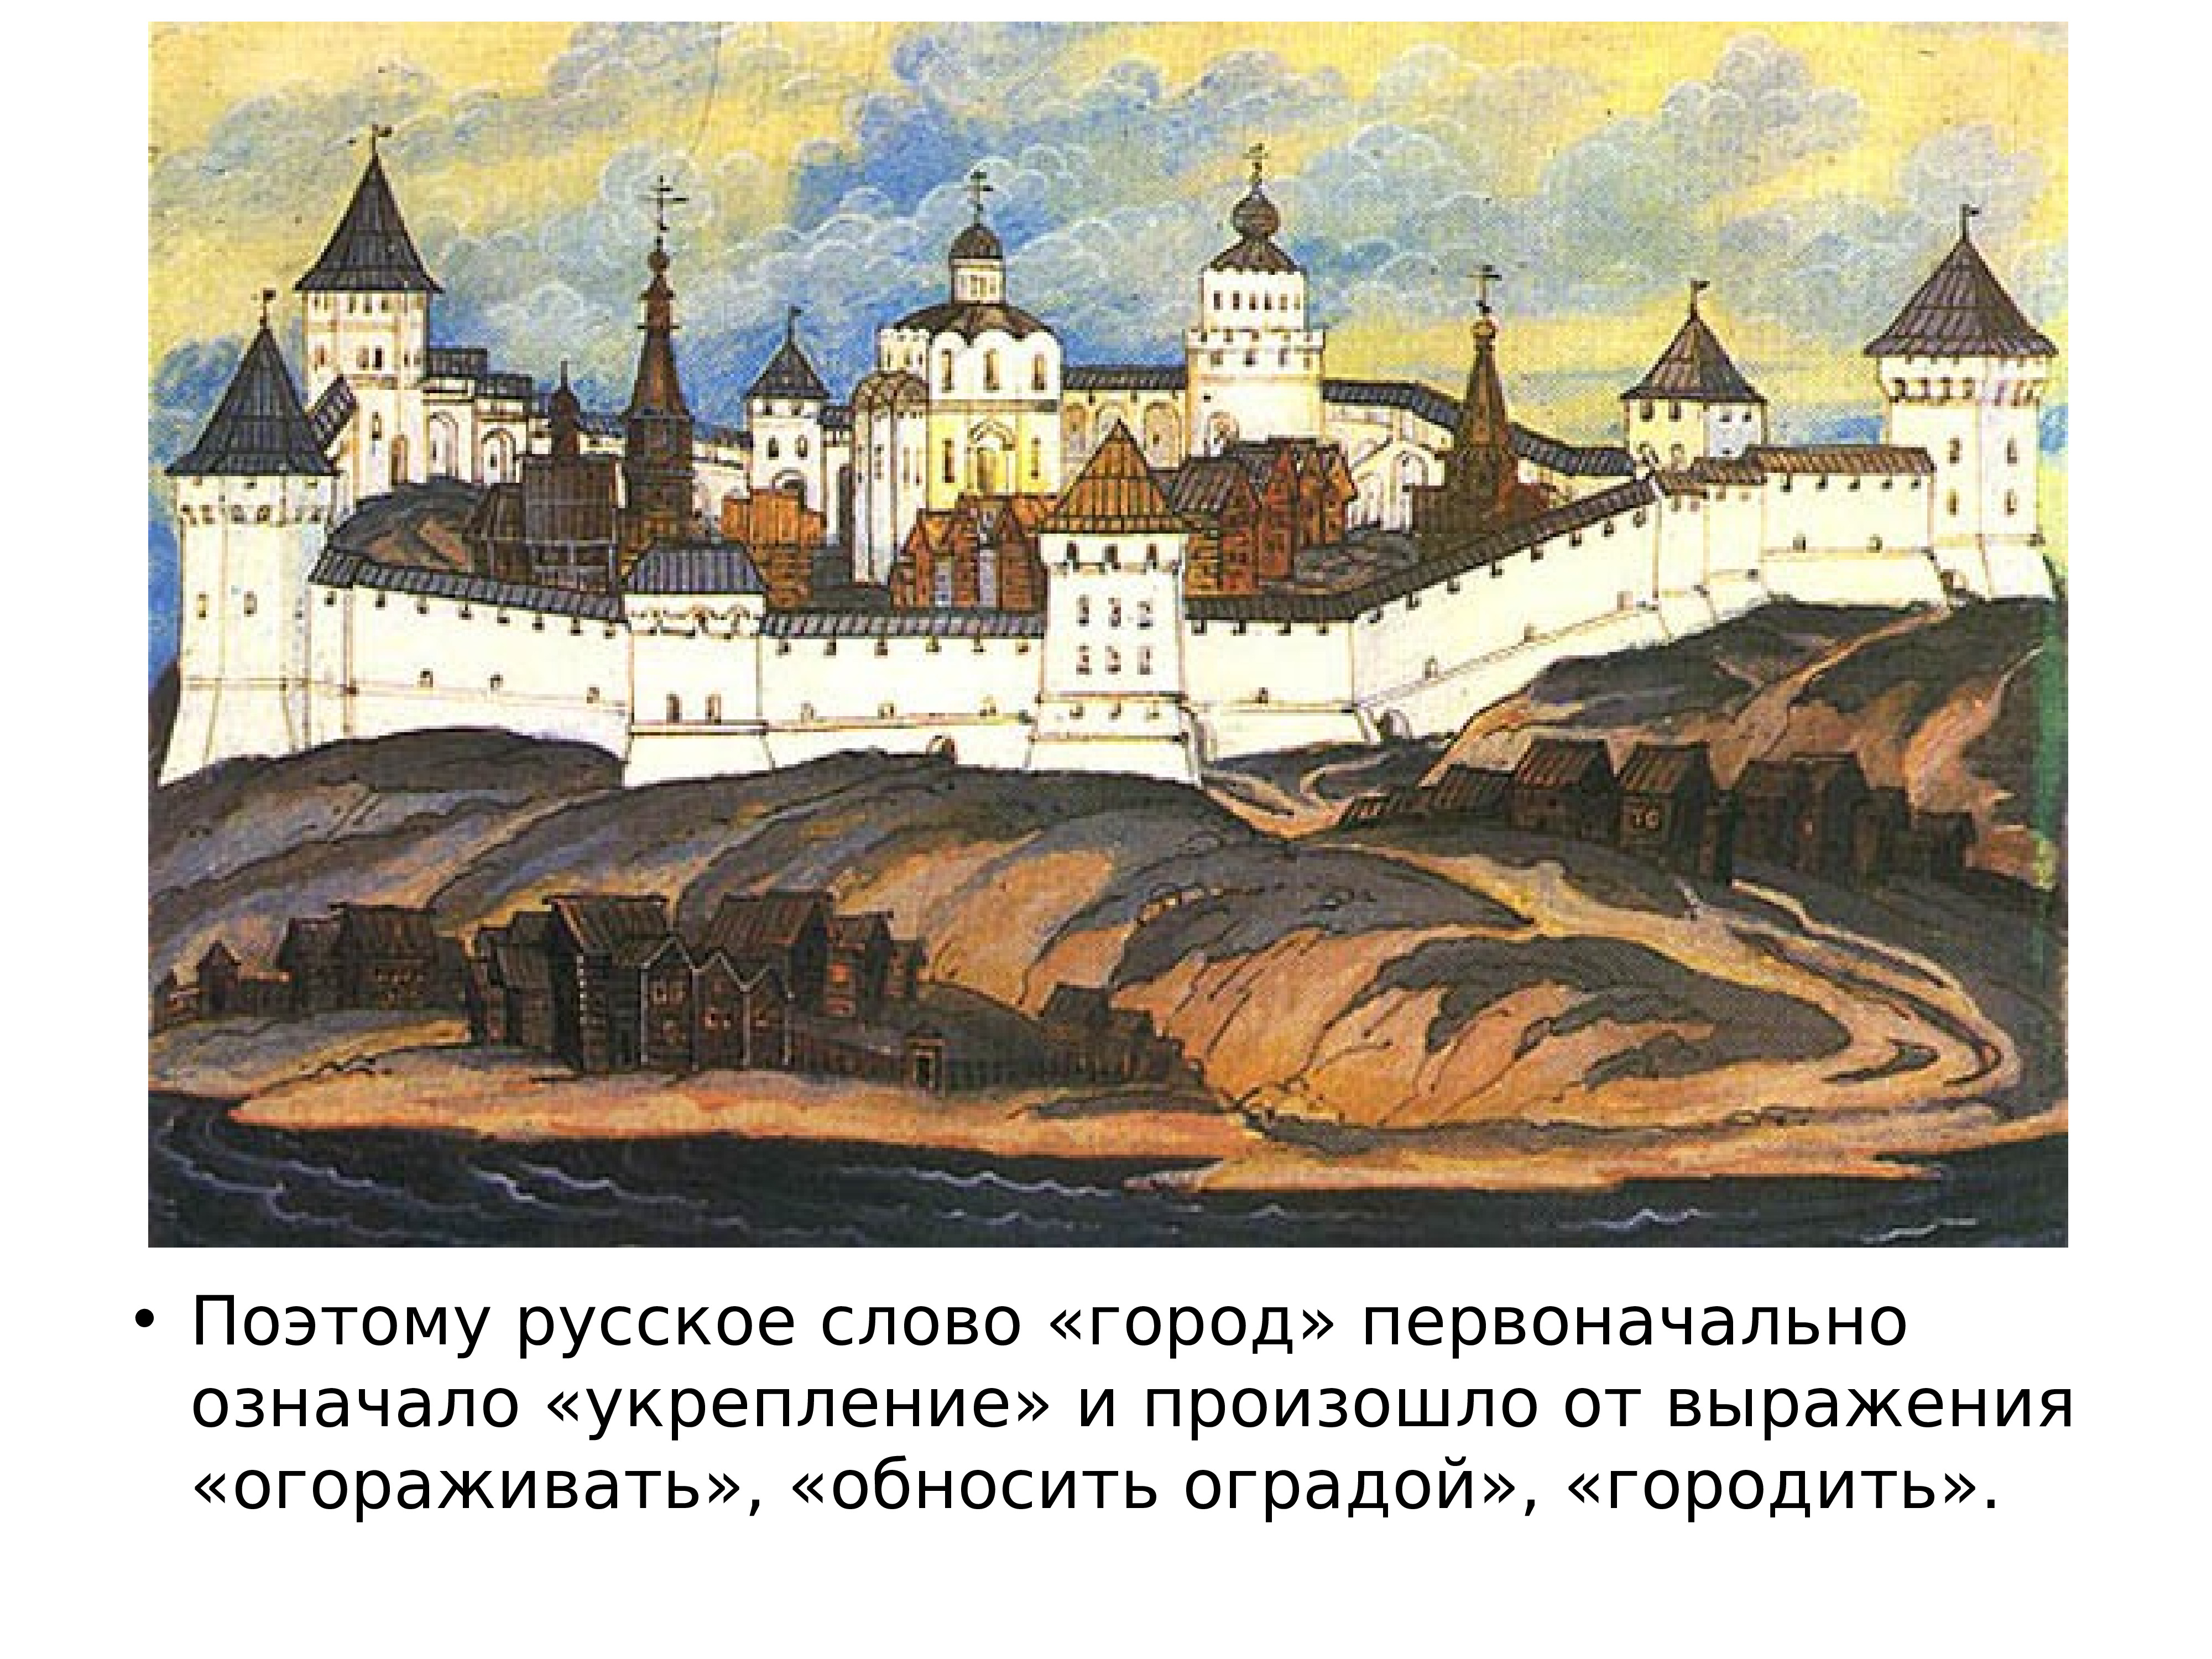 Рисунок по теме города русской земли